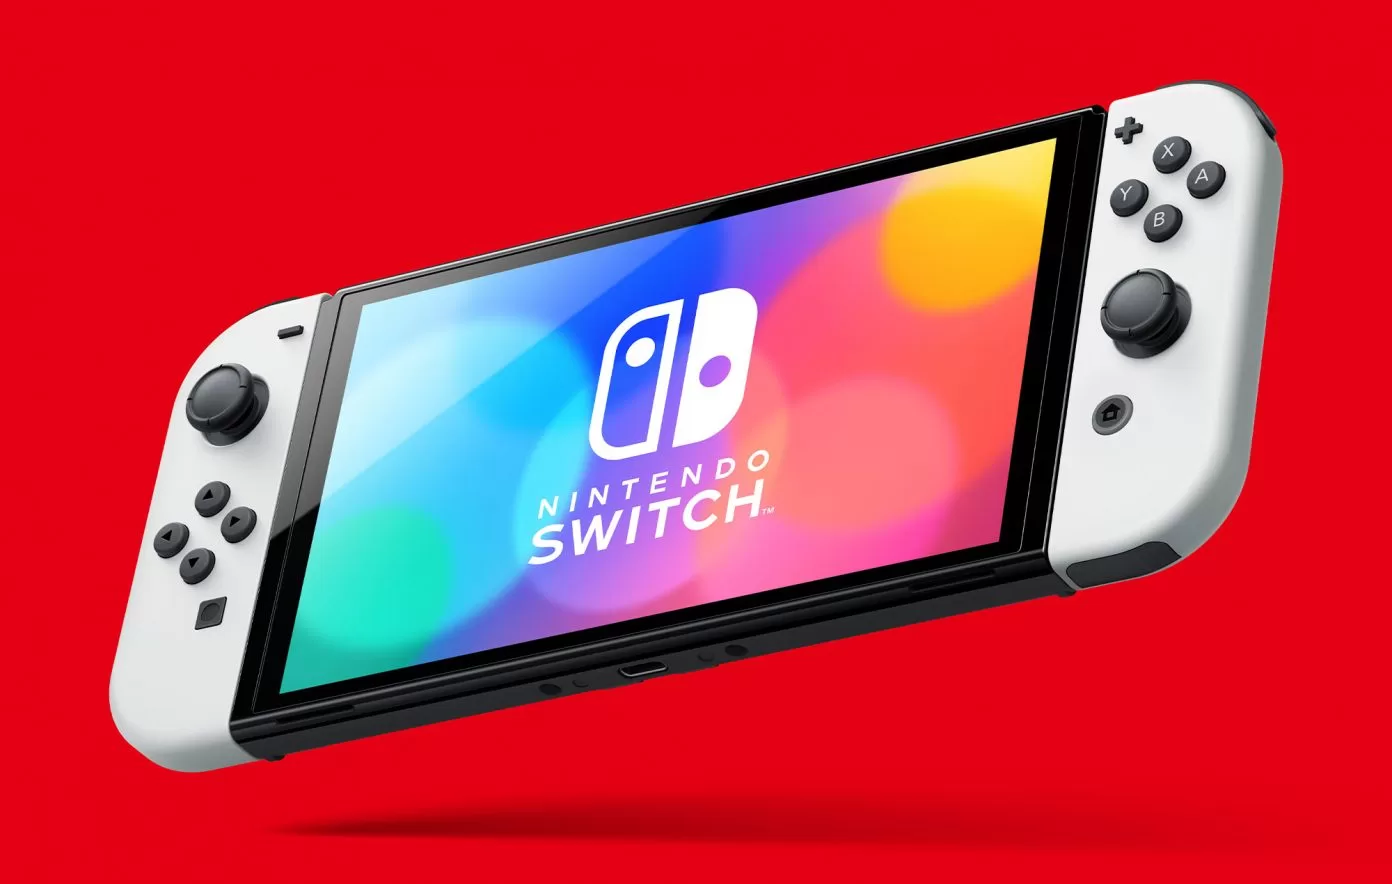 Nintendo Switch OLED Model 1392x884 1 | Nintendo Switch | ประธานนินเทนโด บอกปี 2022 Nintendo Switch ยังคงประสบปัญหาขาดตลาดเพราะ Covid-19